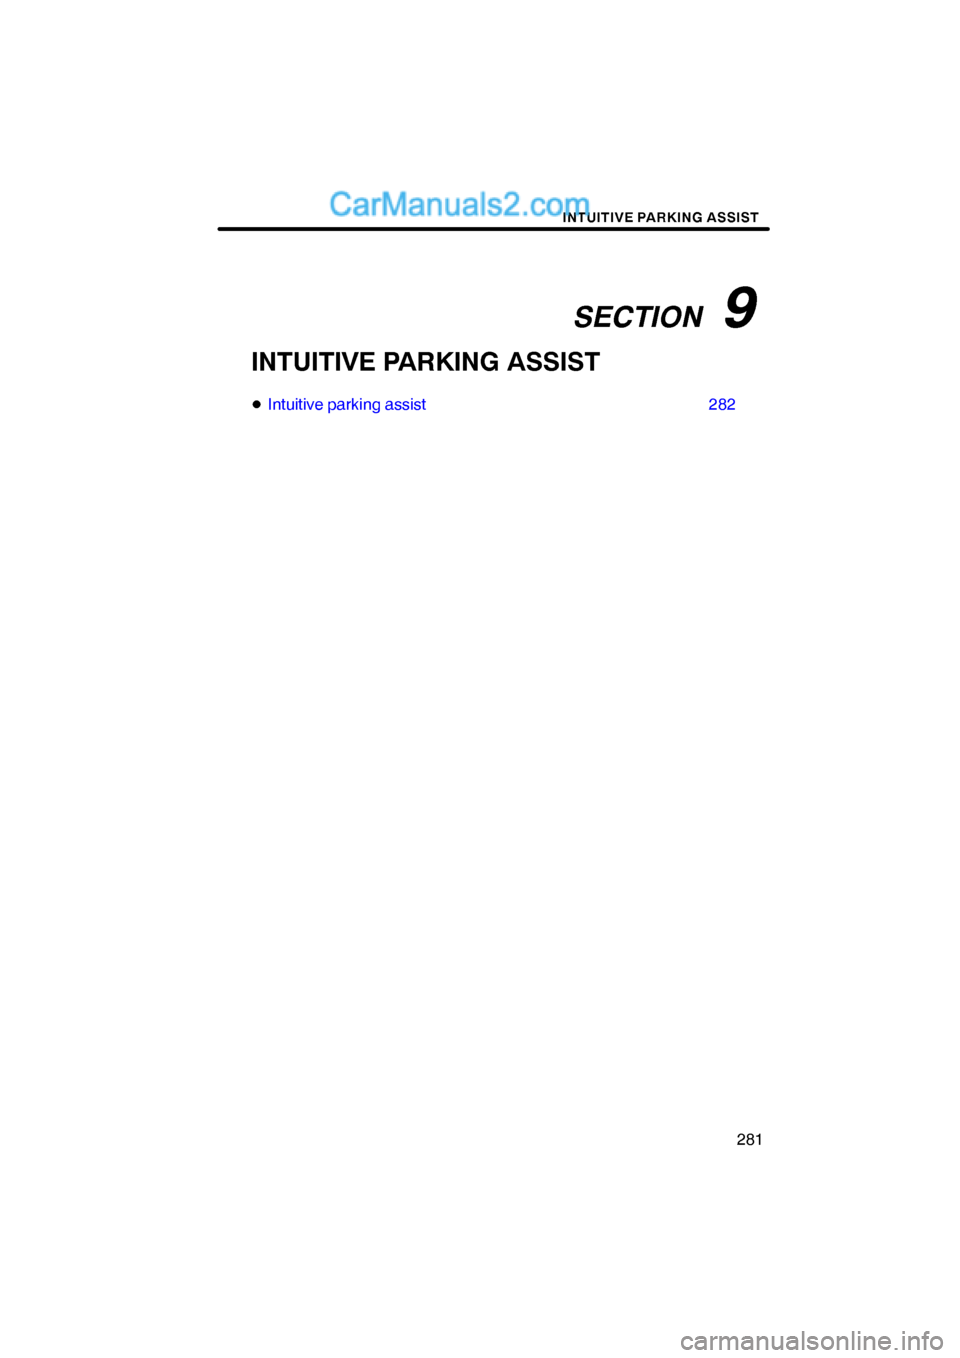 Lexus ES350 2009  Intuitive Parking Assist SECTION   9
INTUITIVE PARKING ASSIST
281
INTUITIVE PARKING ASSIST
Intuitive parking assist 282  